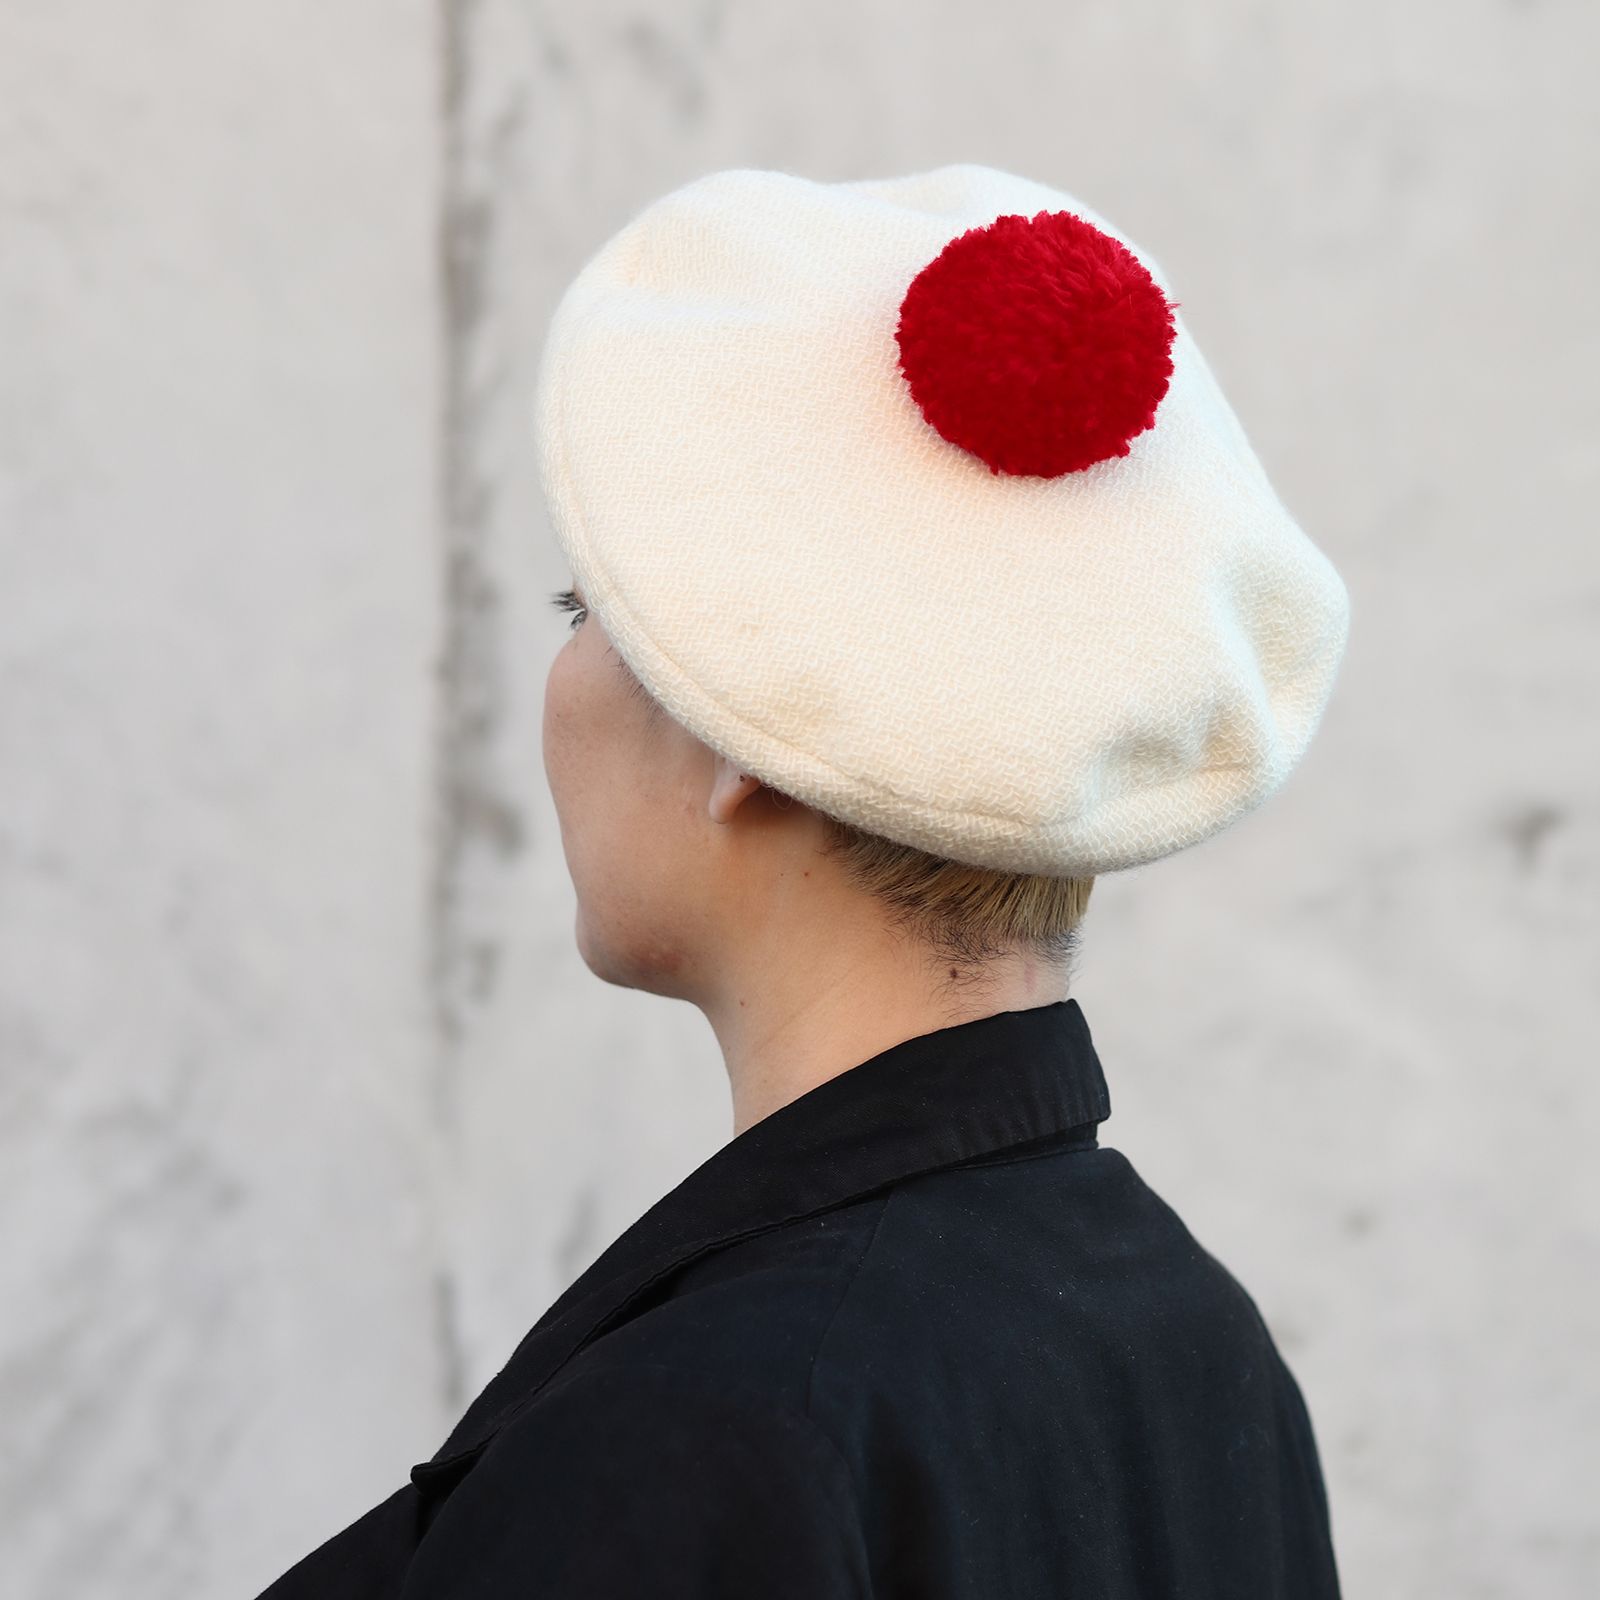 Chapon アップルベレー帽 ビッグ ワインレッド - 帽子